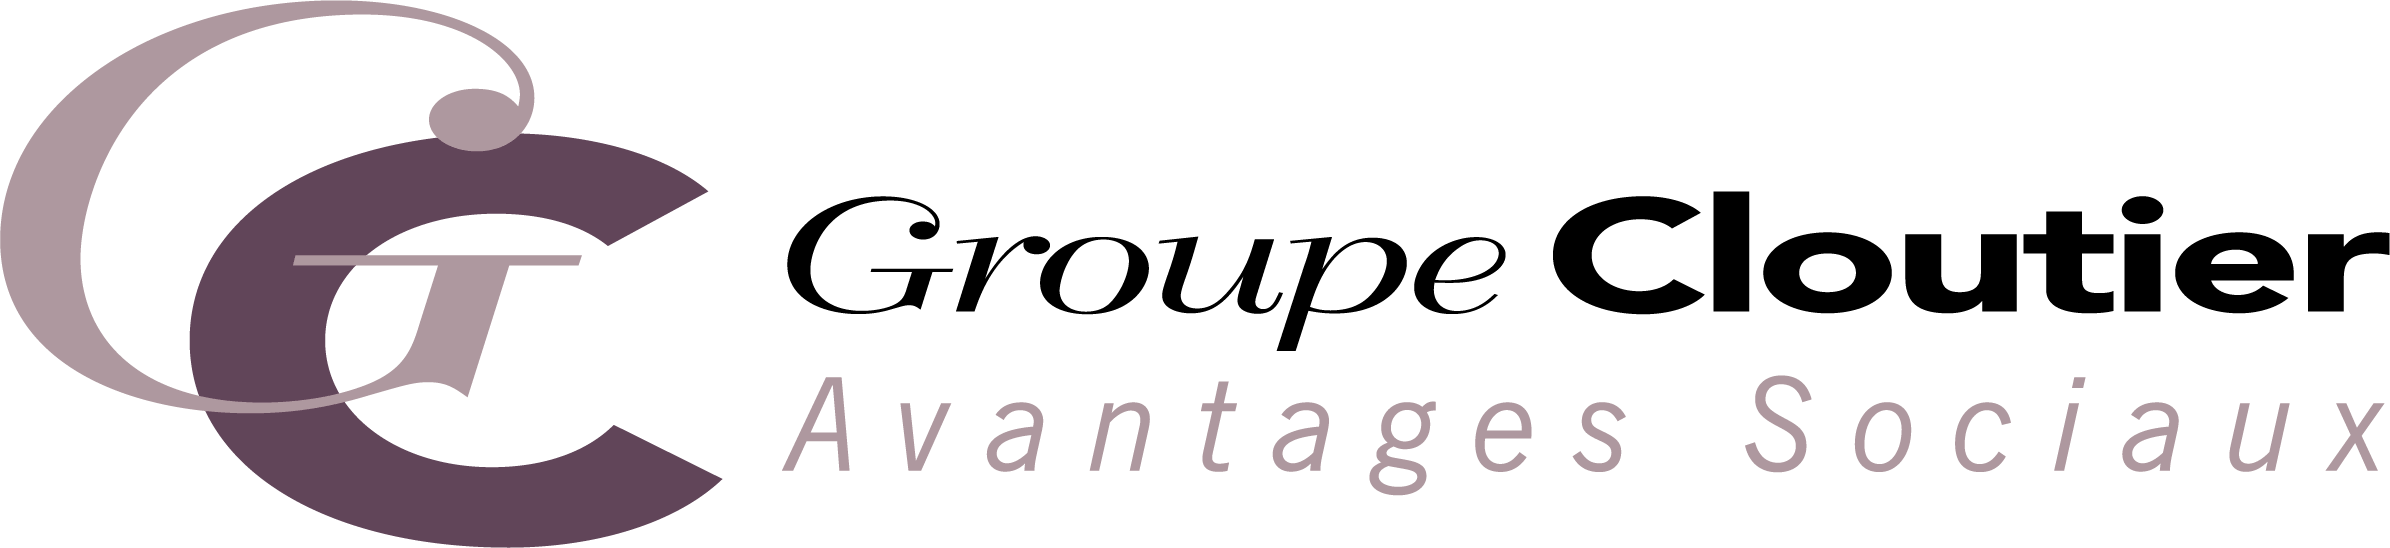 Groupe Cloutier Avantages Sociaux - logo - tinyfied